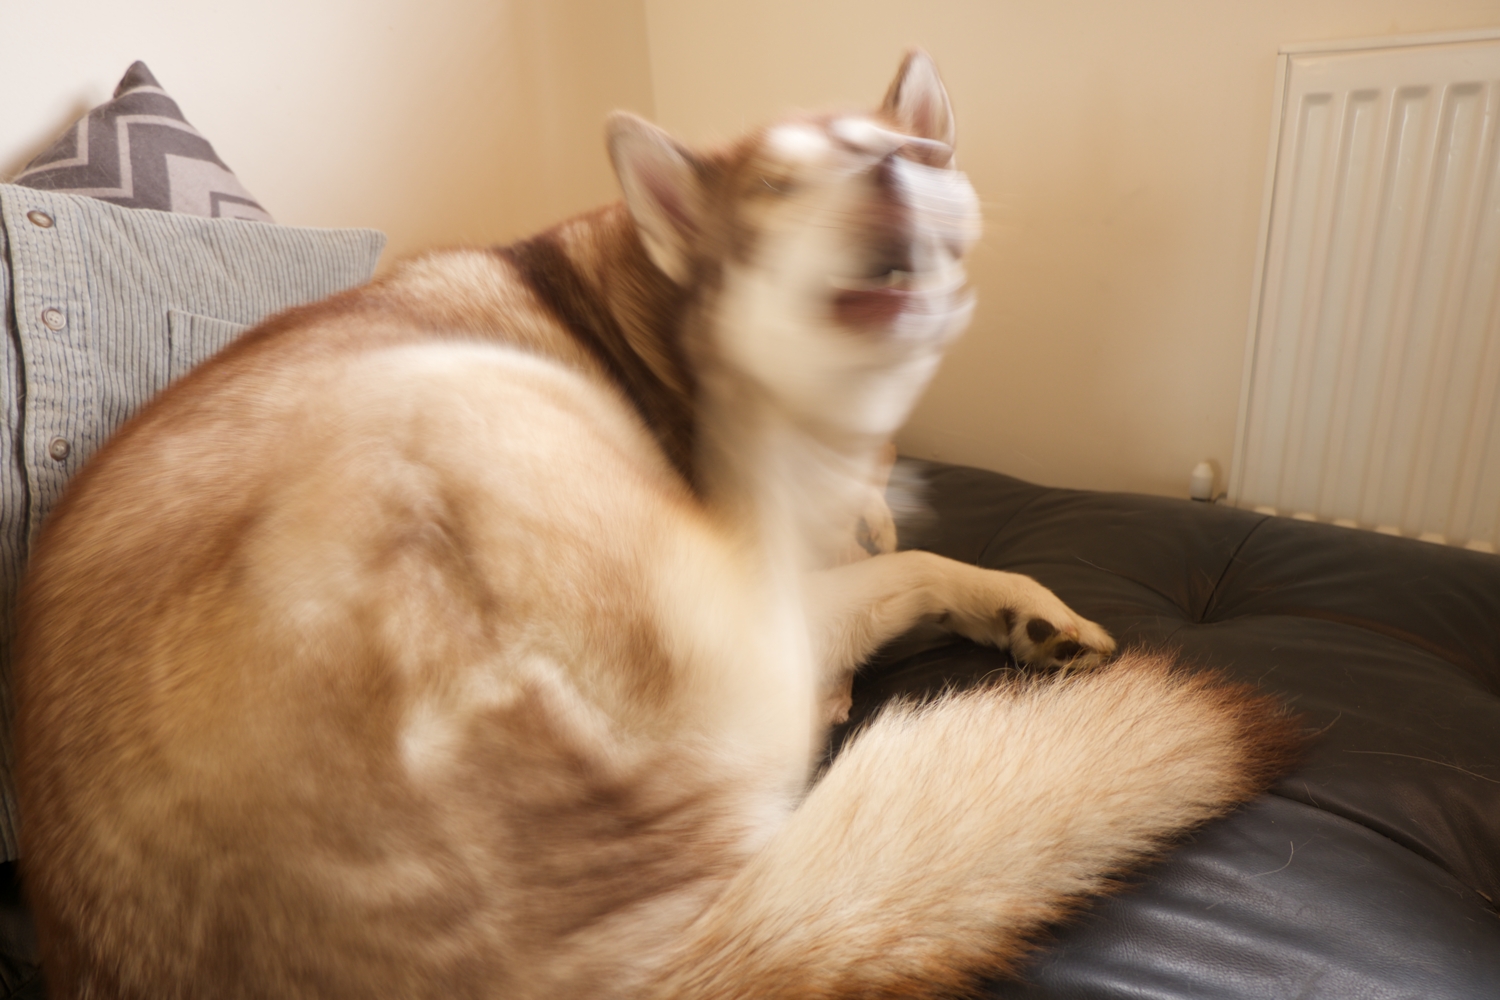 Blurry photo of Oskar the dog scratching